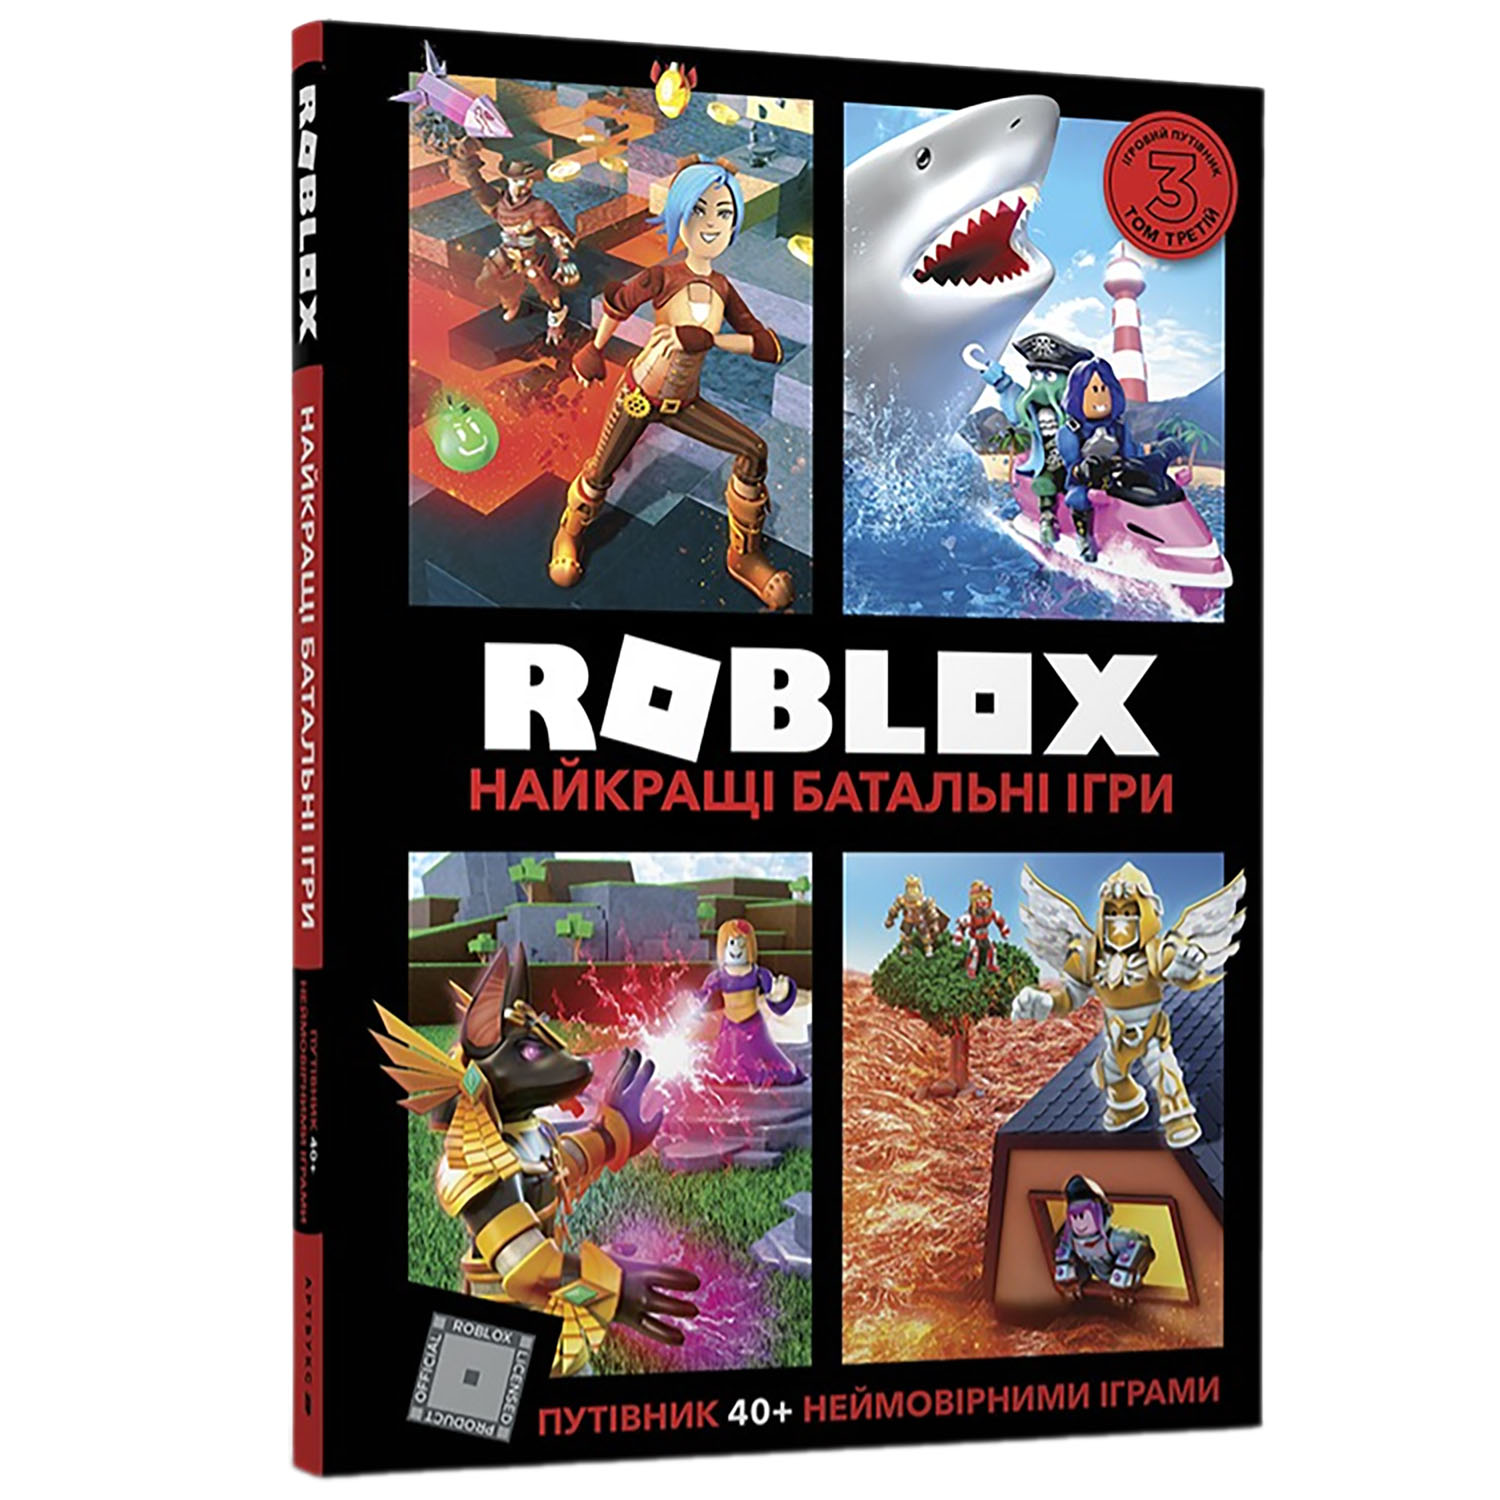 Roblox Найкращі батальні ігри - Алекс Вілтшир Крейг Джеллі (9786177688937) - фото 1